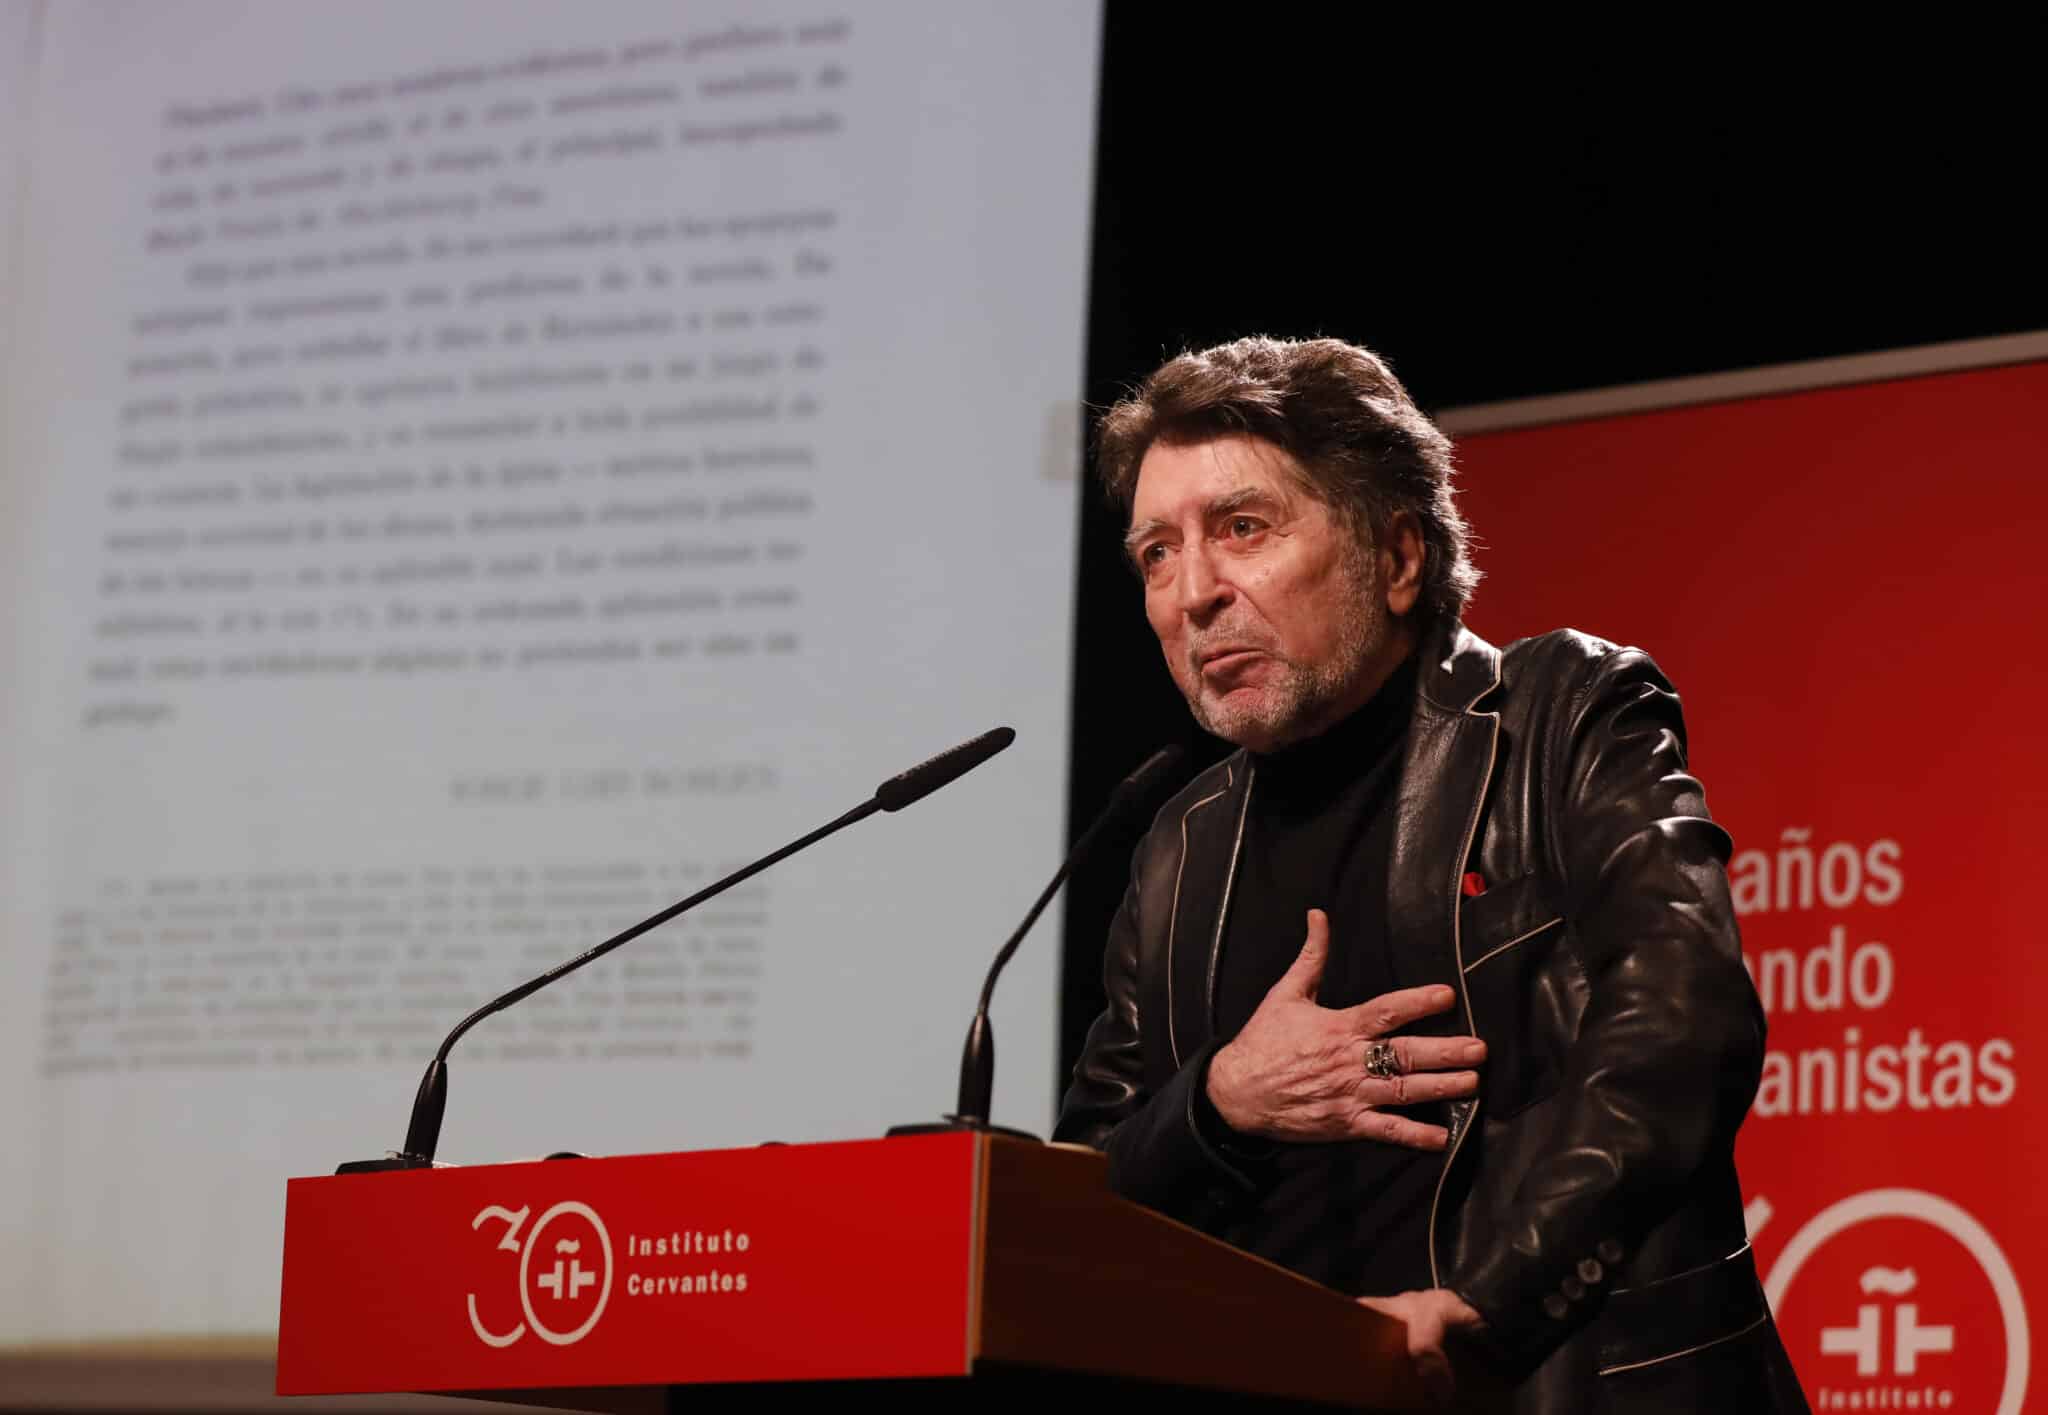 El cantante Joaquín Sabina interviene en un homenaje en el Instituto Cervantes